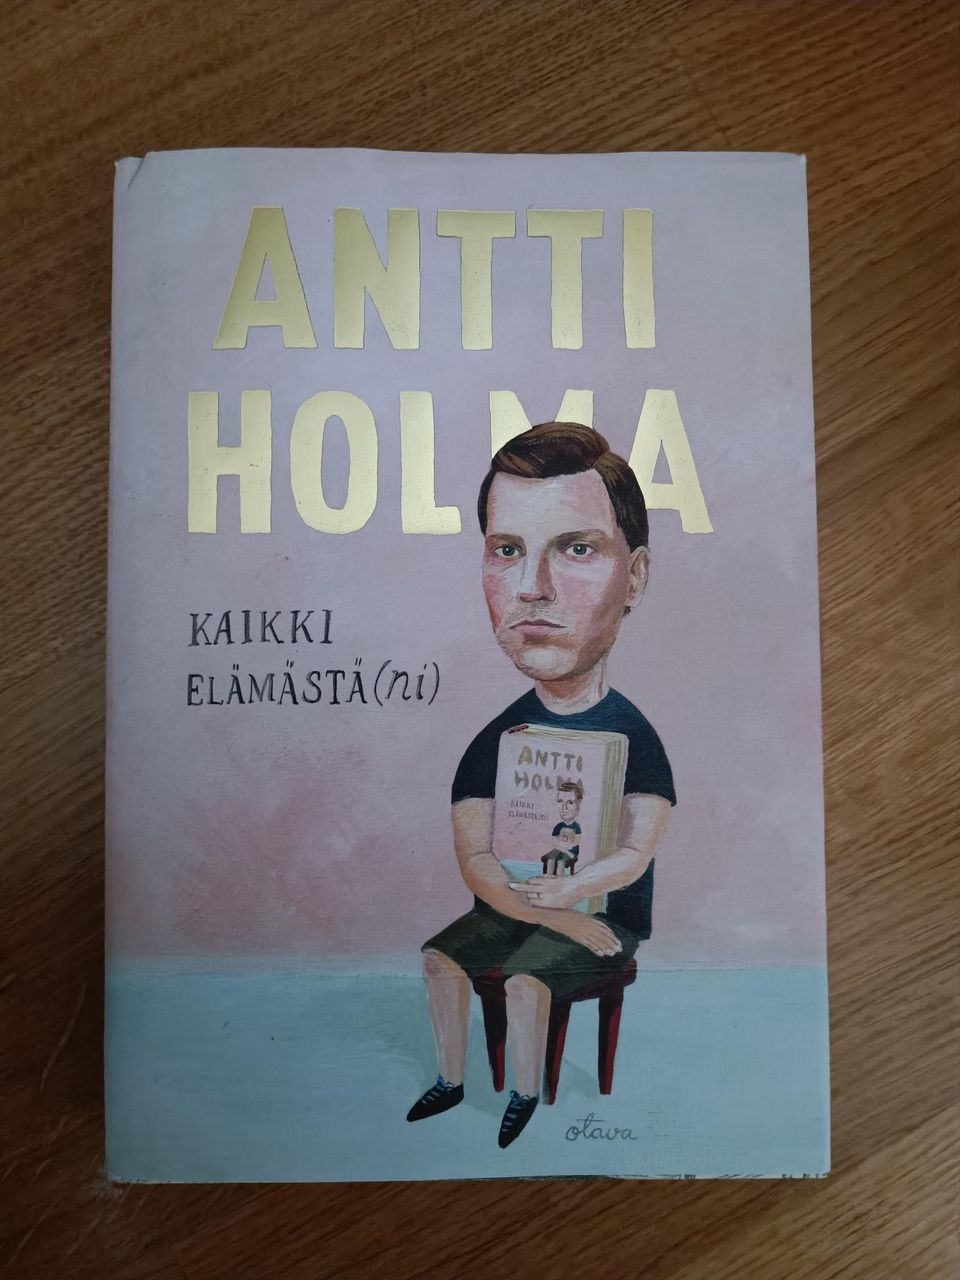 Antti Holma - Kaikki elämästä(ni)